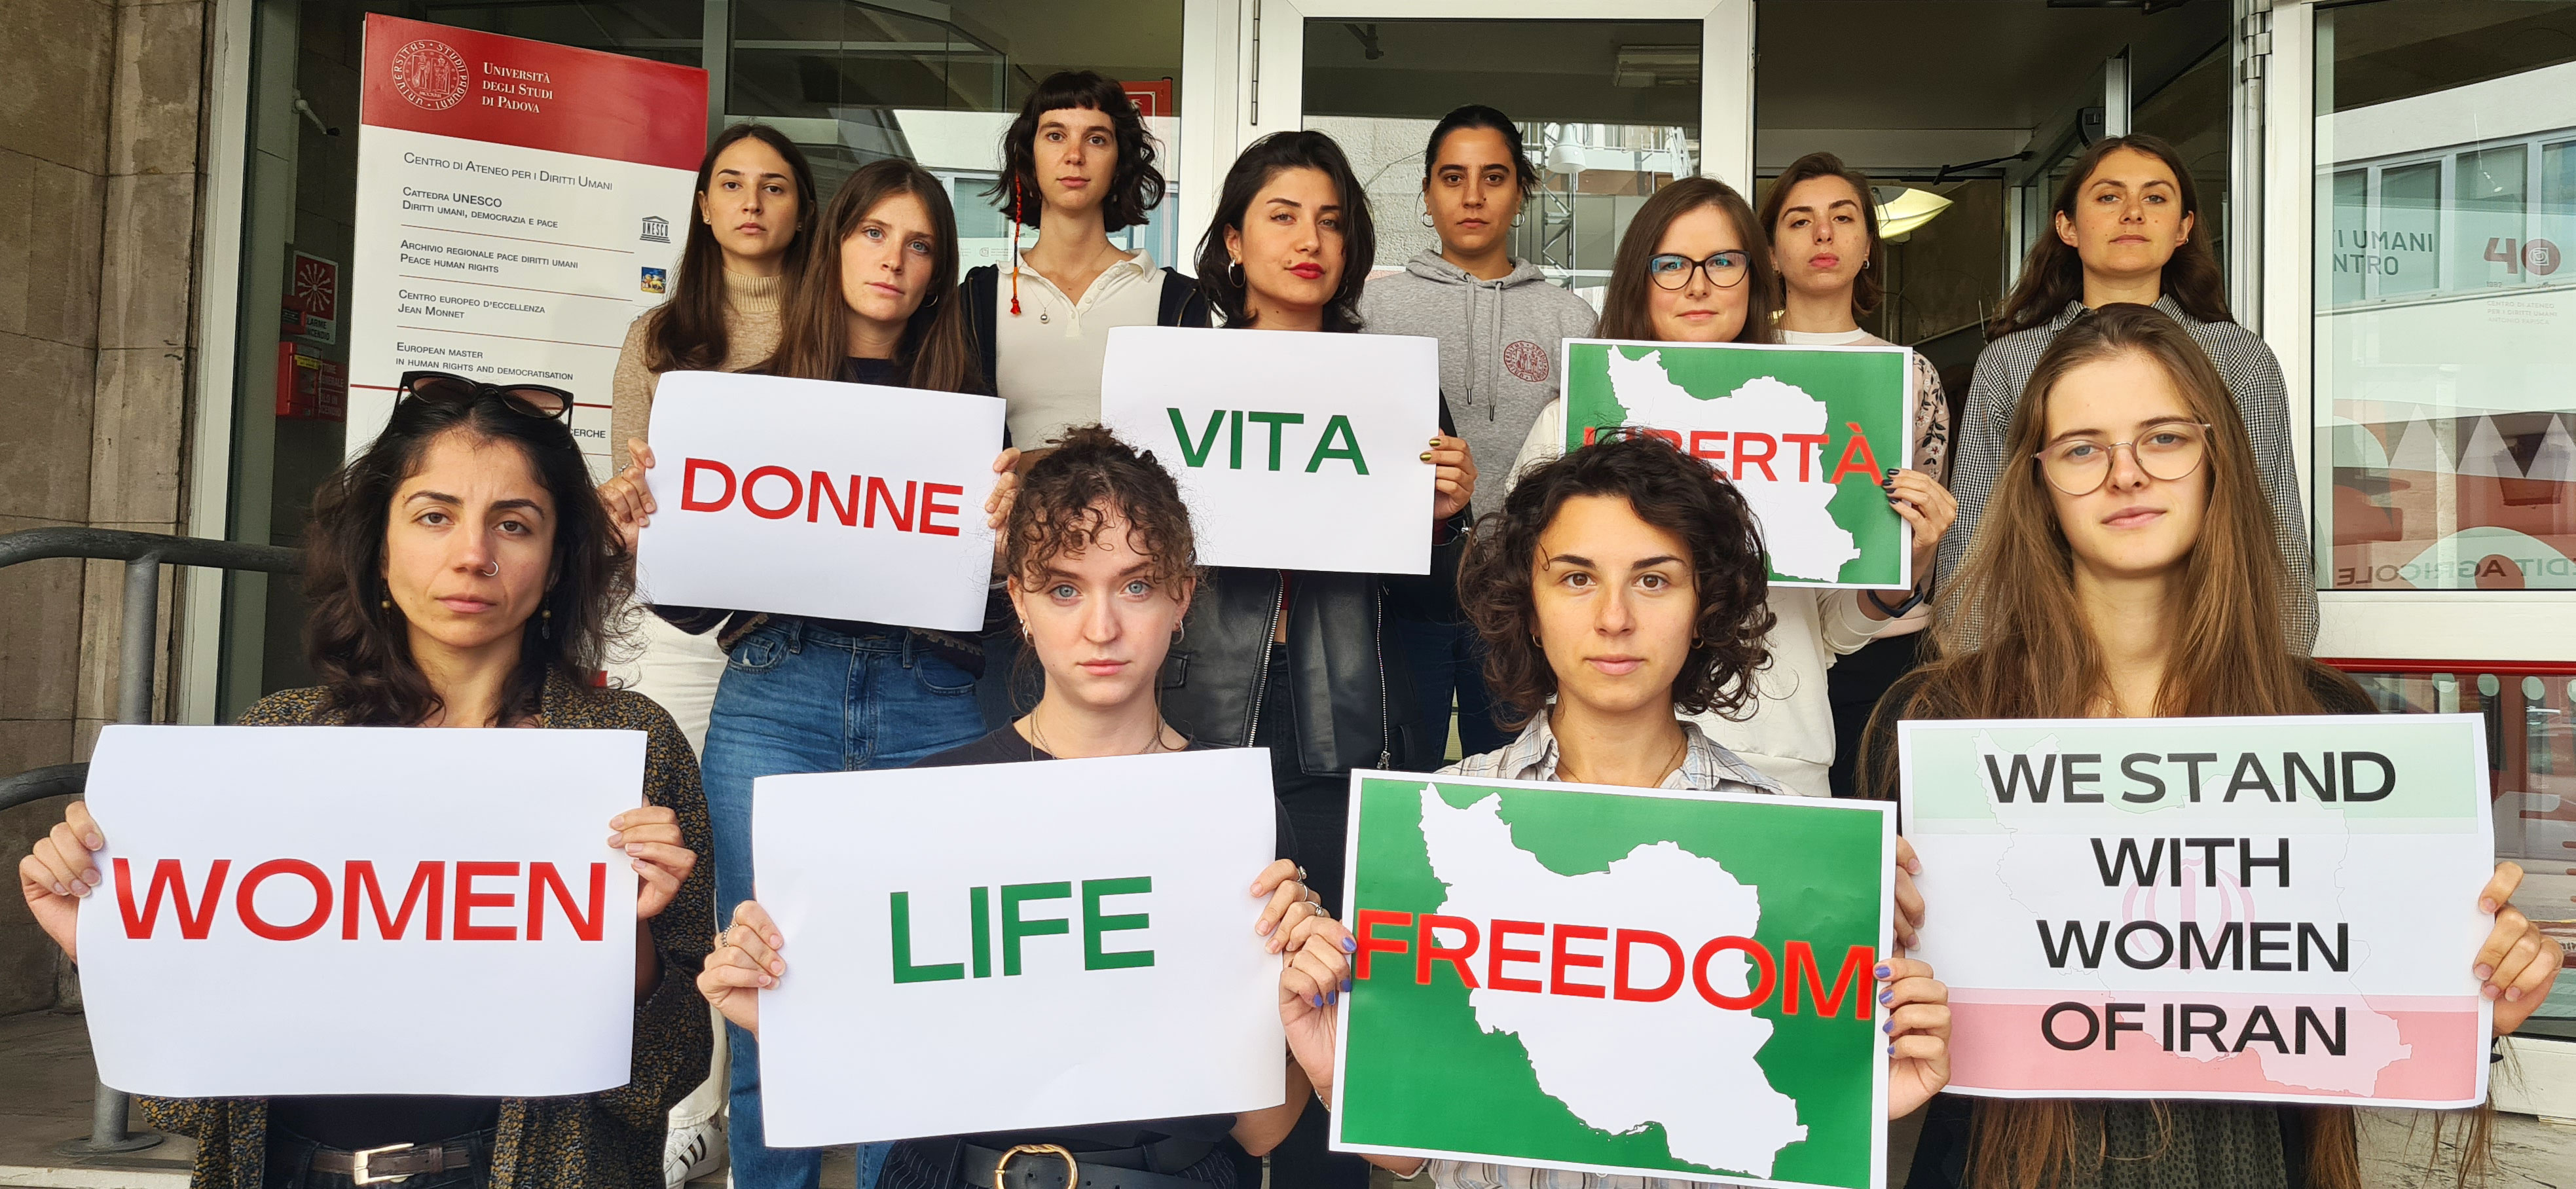 Le studentesse del Corso di laurea in Human Rights and Multi-level Governance dell'Università di Padova in solidarietà con le donne e gli uomini iraniani che chiedono con coraggio libertà, rispetto della vita e dei diritti umani.